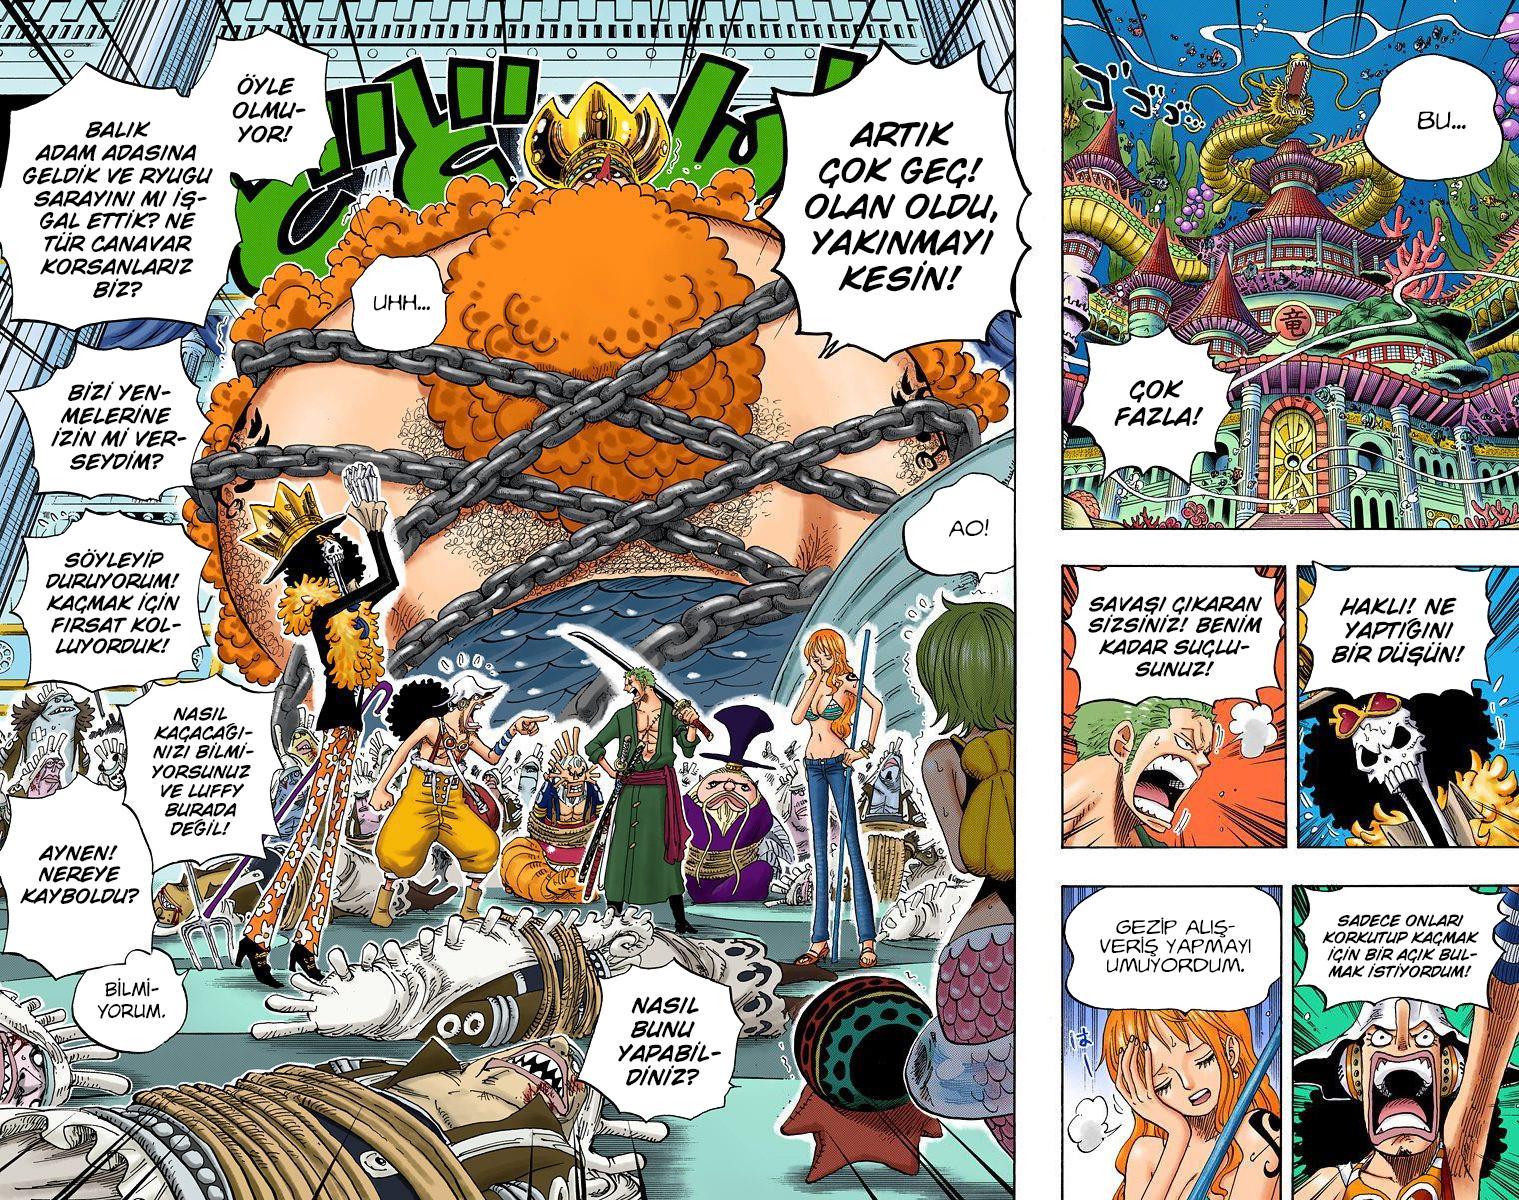 One Piece [Renkli] mangasının 0614 bölümünün 3. sayfasını okuyorsunuz.